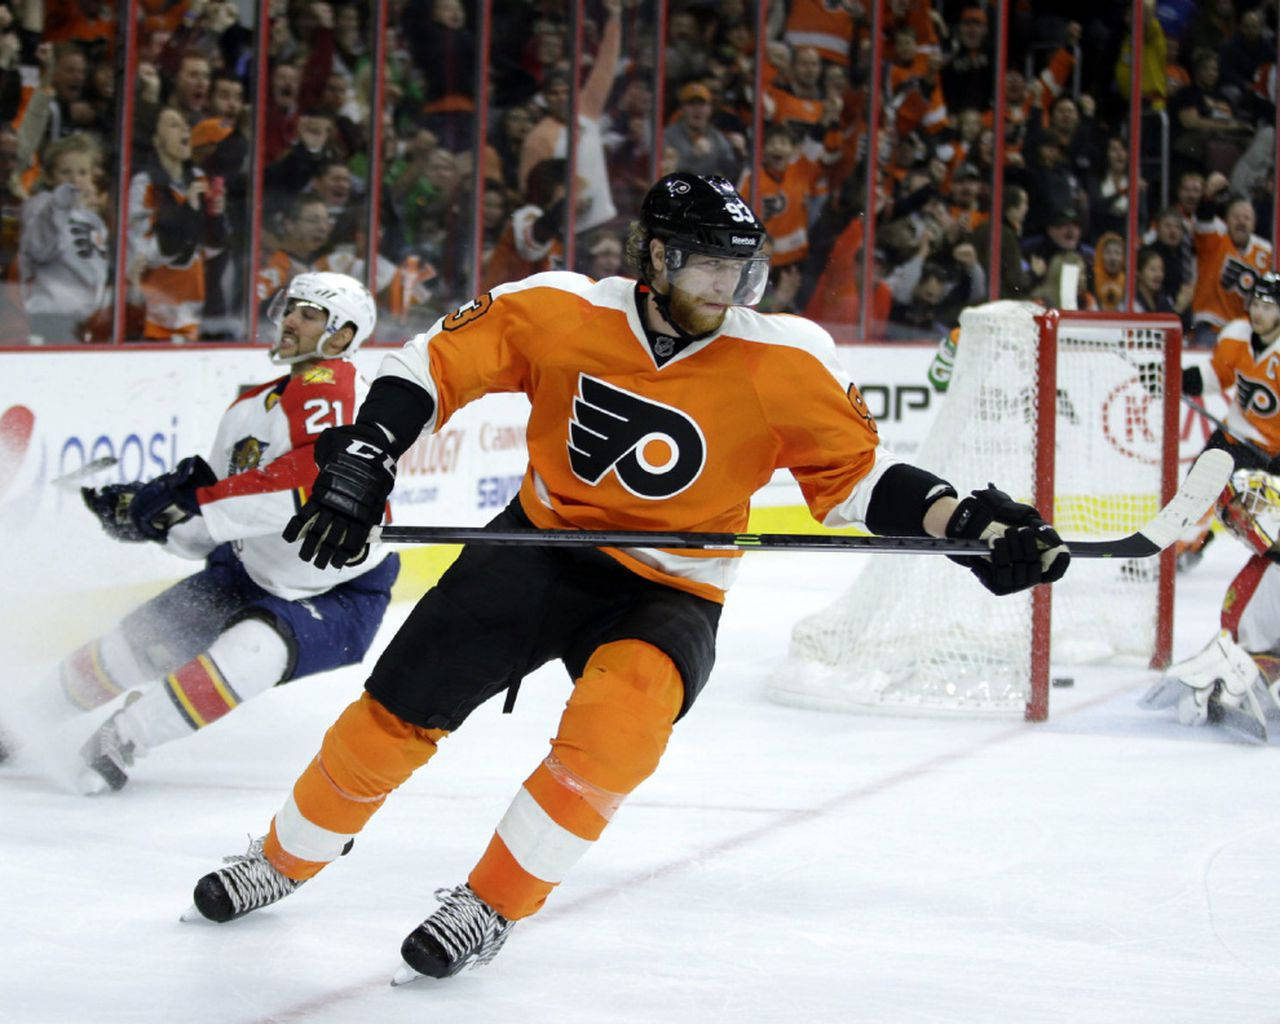 Eishockeyspielerjakub Voracek Von Den Philadelphia Flyers Gegen Die Chicago Blackhawks Wallpaper